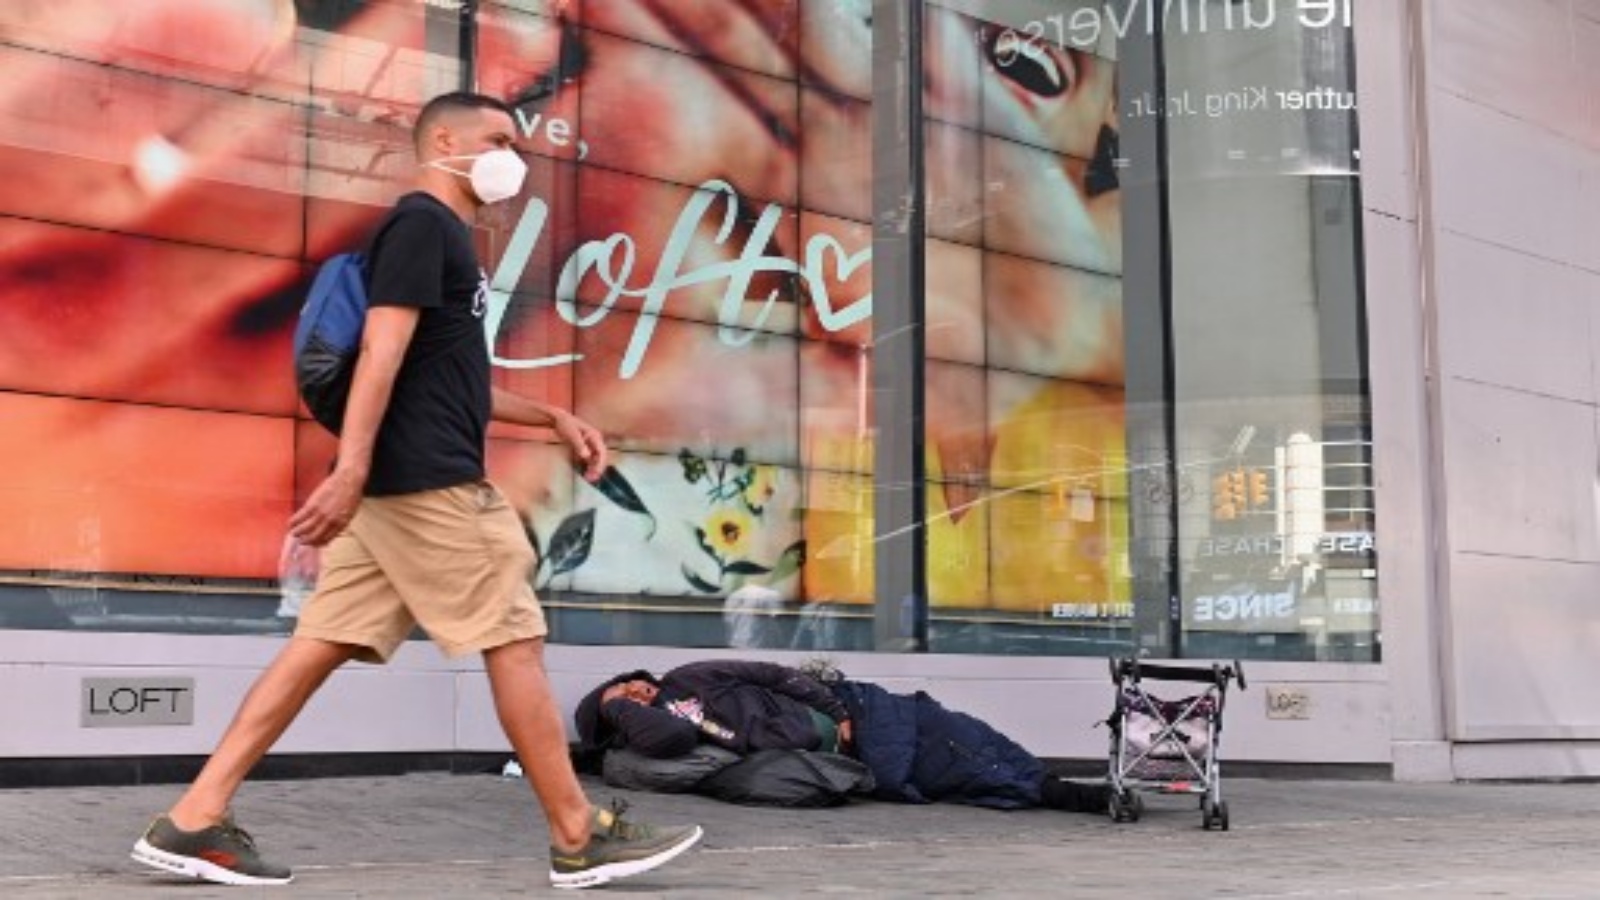 شخص مشرد ينام أمام متجر في تايم سكوير في 28 سبتمبر 2020 في مدينة نيويورك. حذرت السلطات الصحية في المدينة يوم الأحد من ارتفاع معدلات الإصابة بفيروس كورونا 